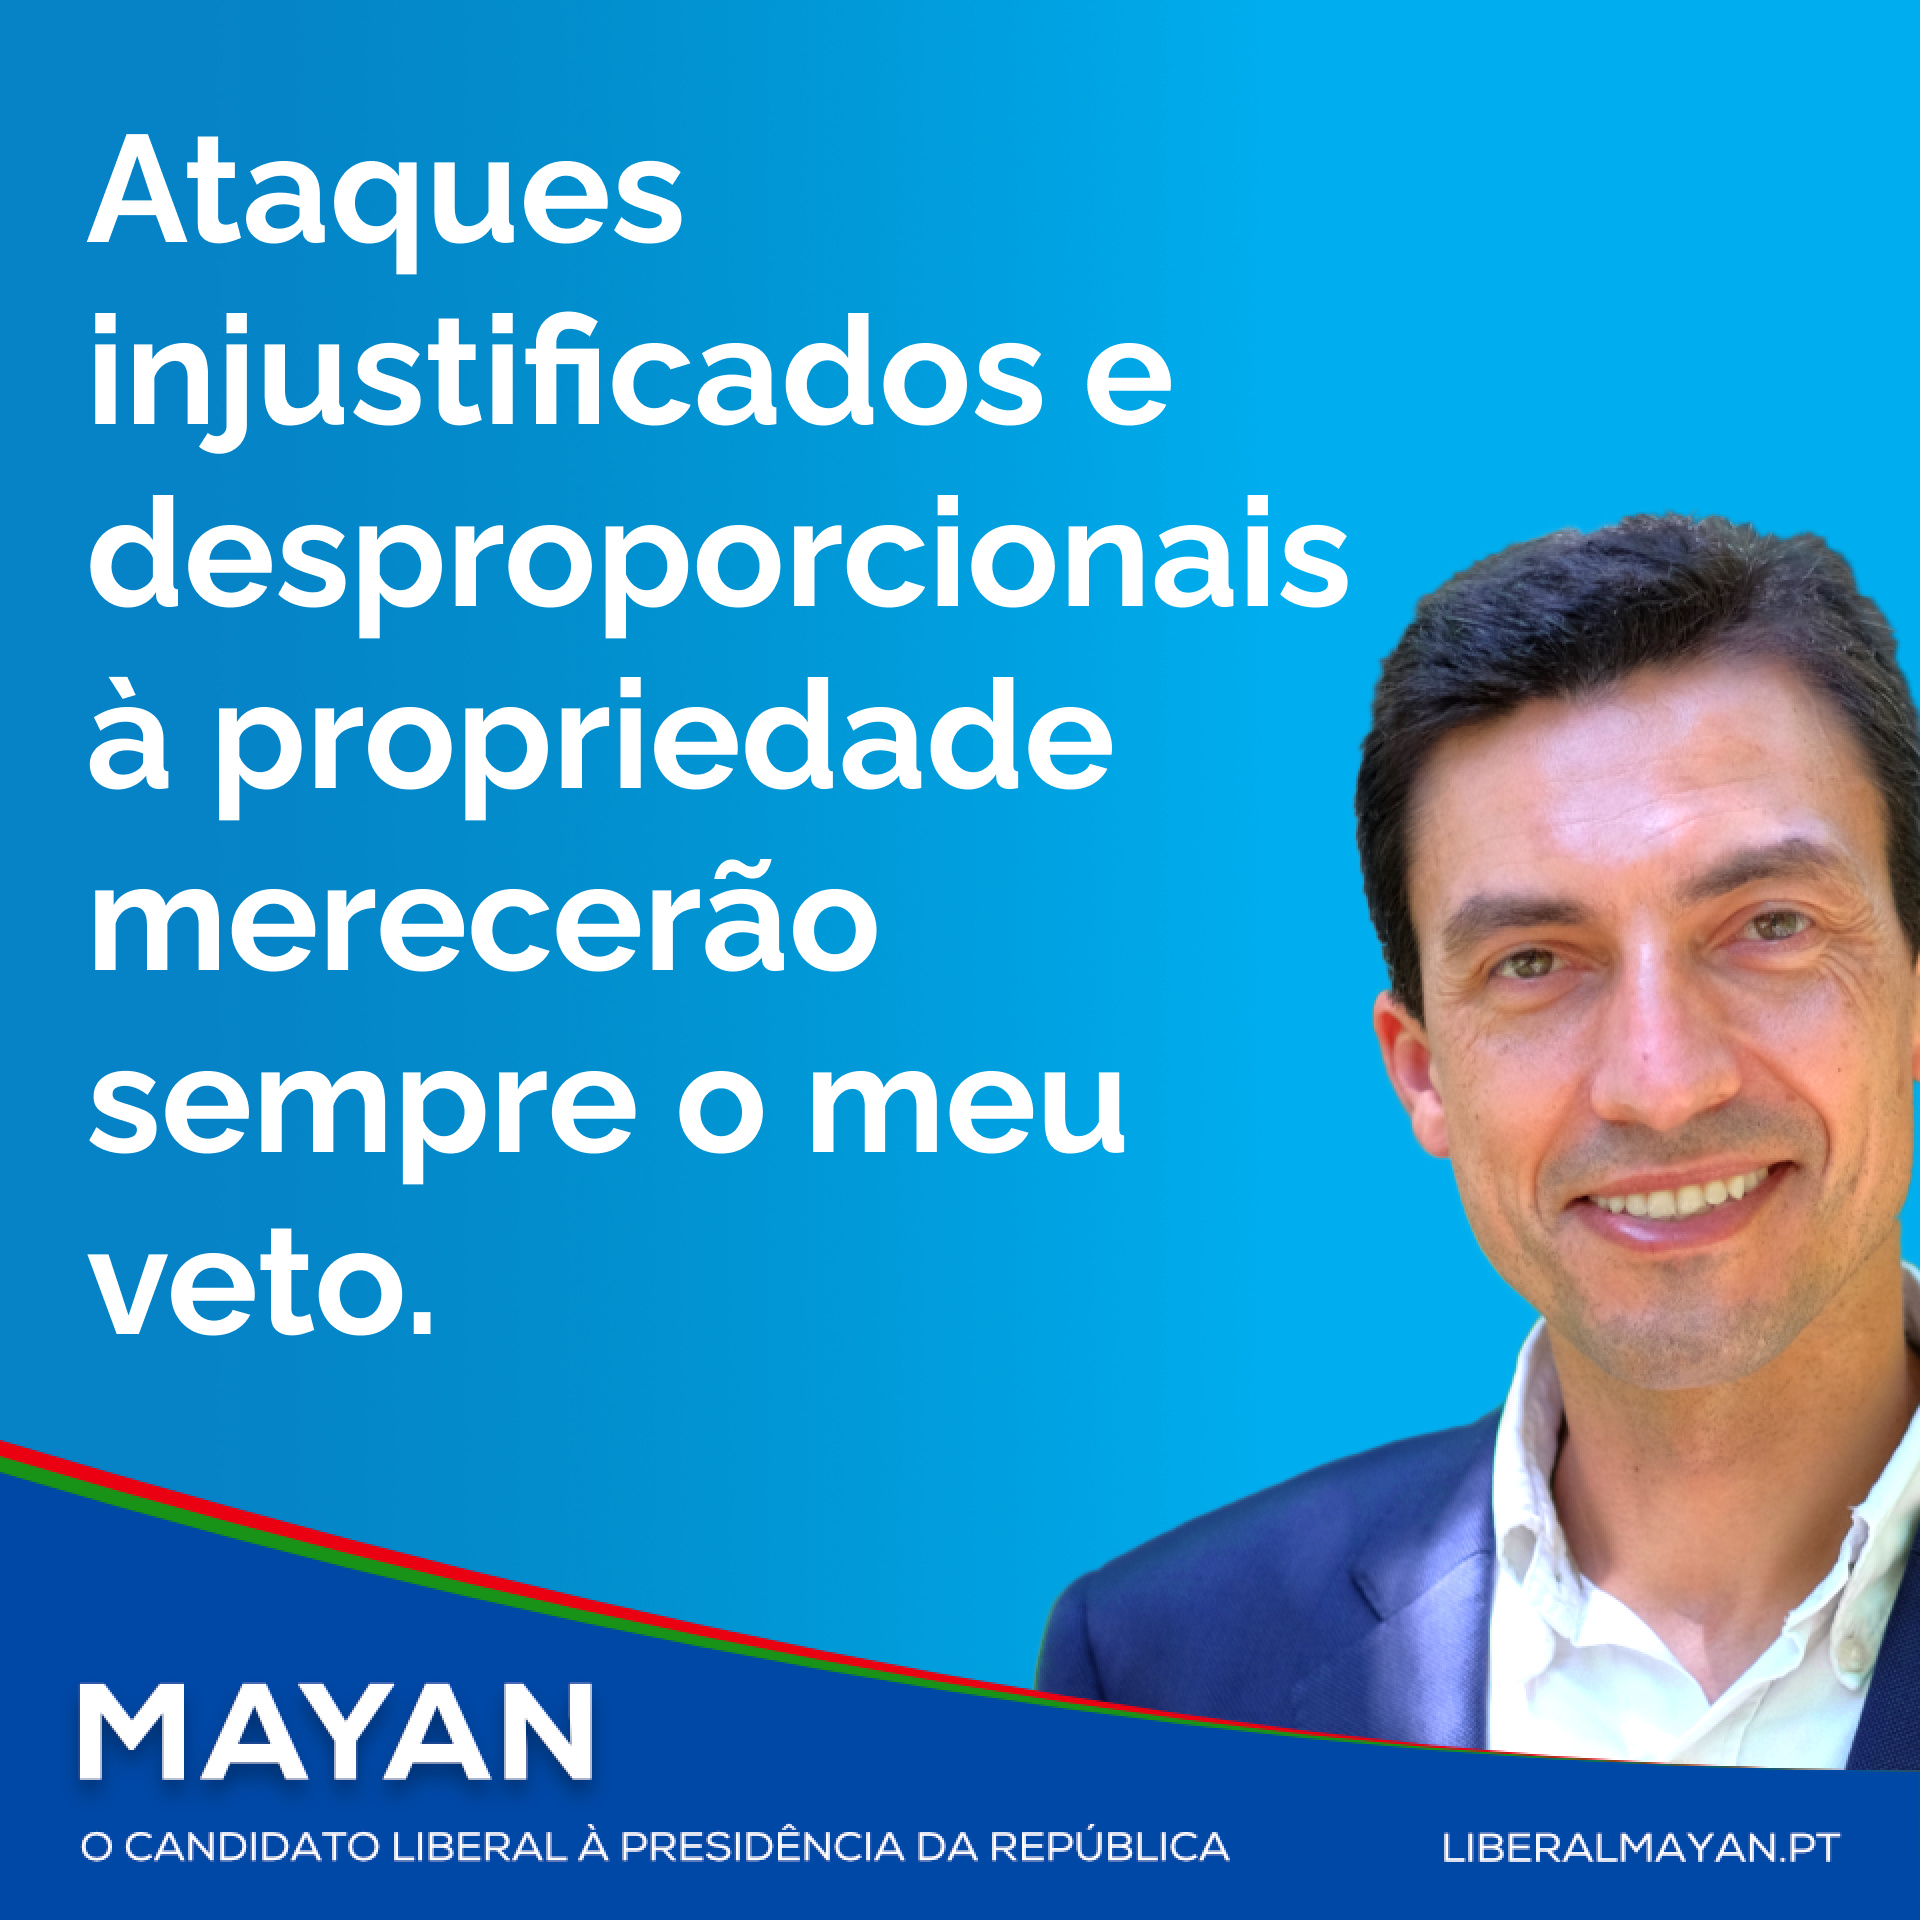 Tiago Mayan: Ataques injustificados e desproporcionais à propriedade merecerão sempre o meu veto